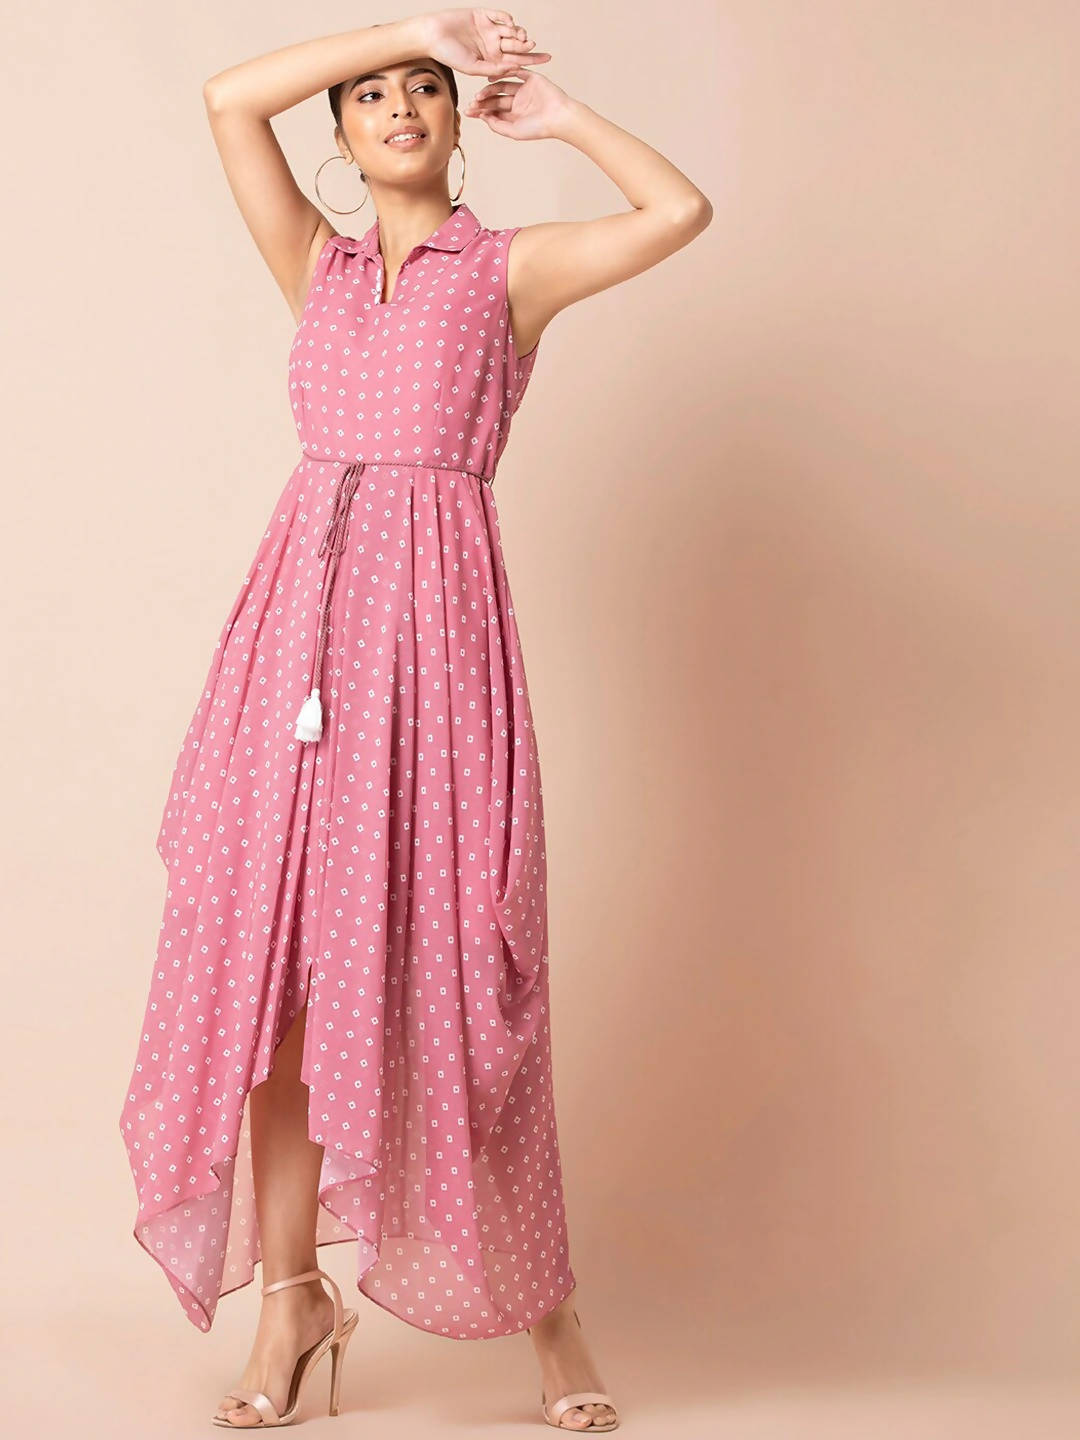 Buy Indya Pink & White Bandhani Printed Maxi Dress Online at Best Price